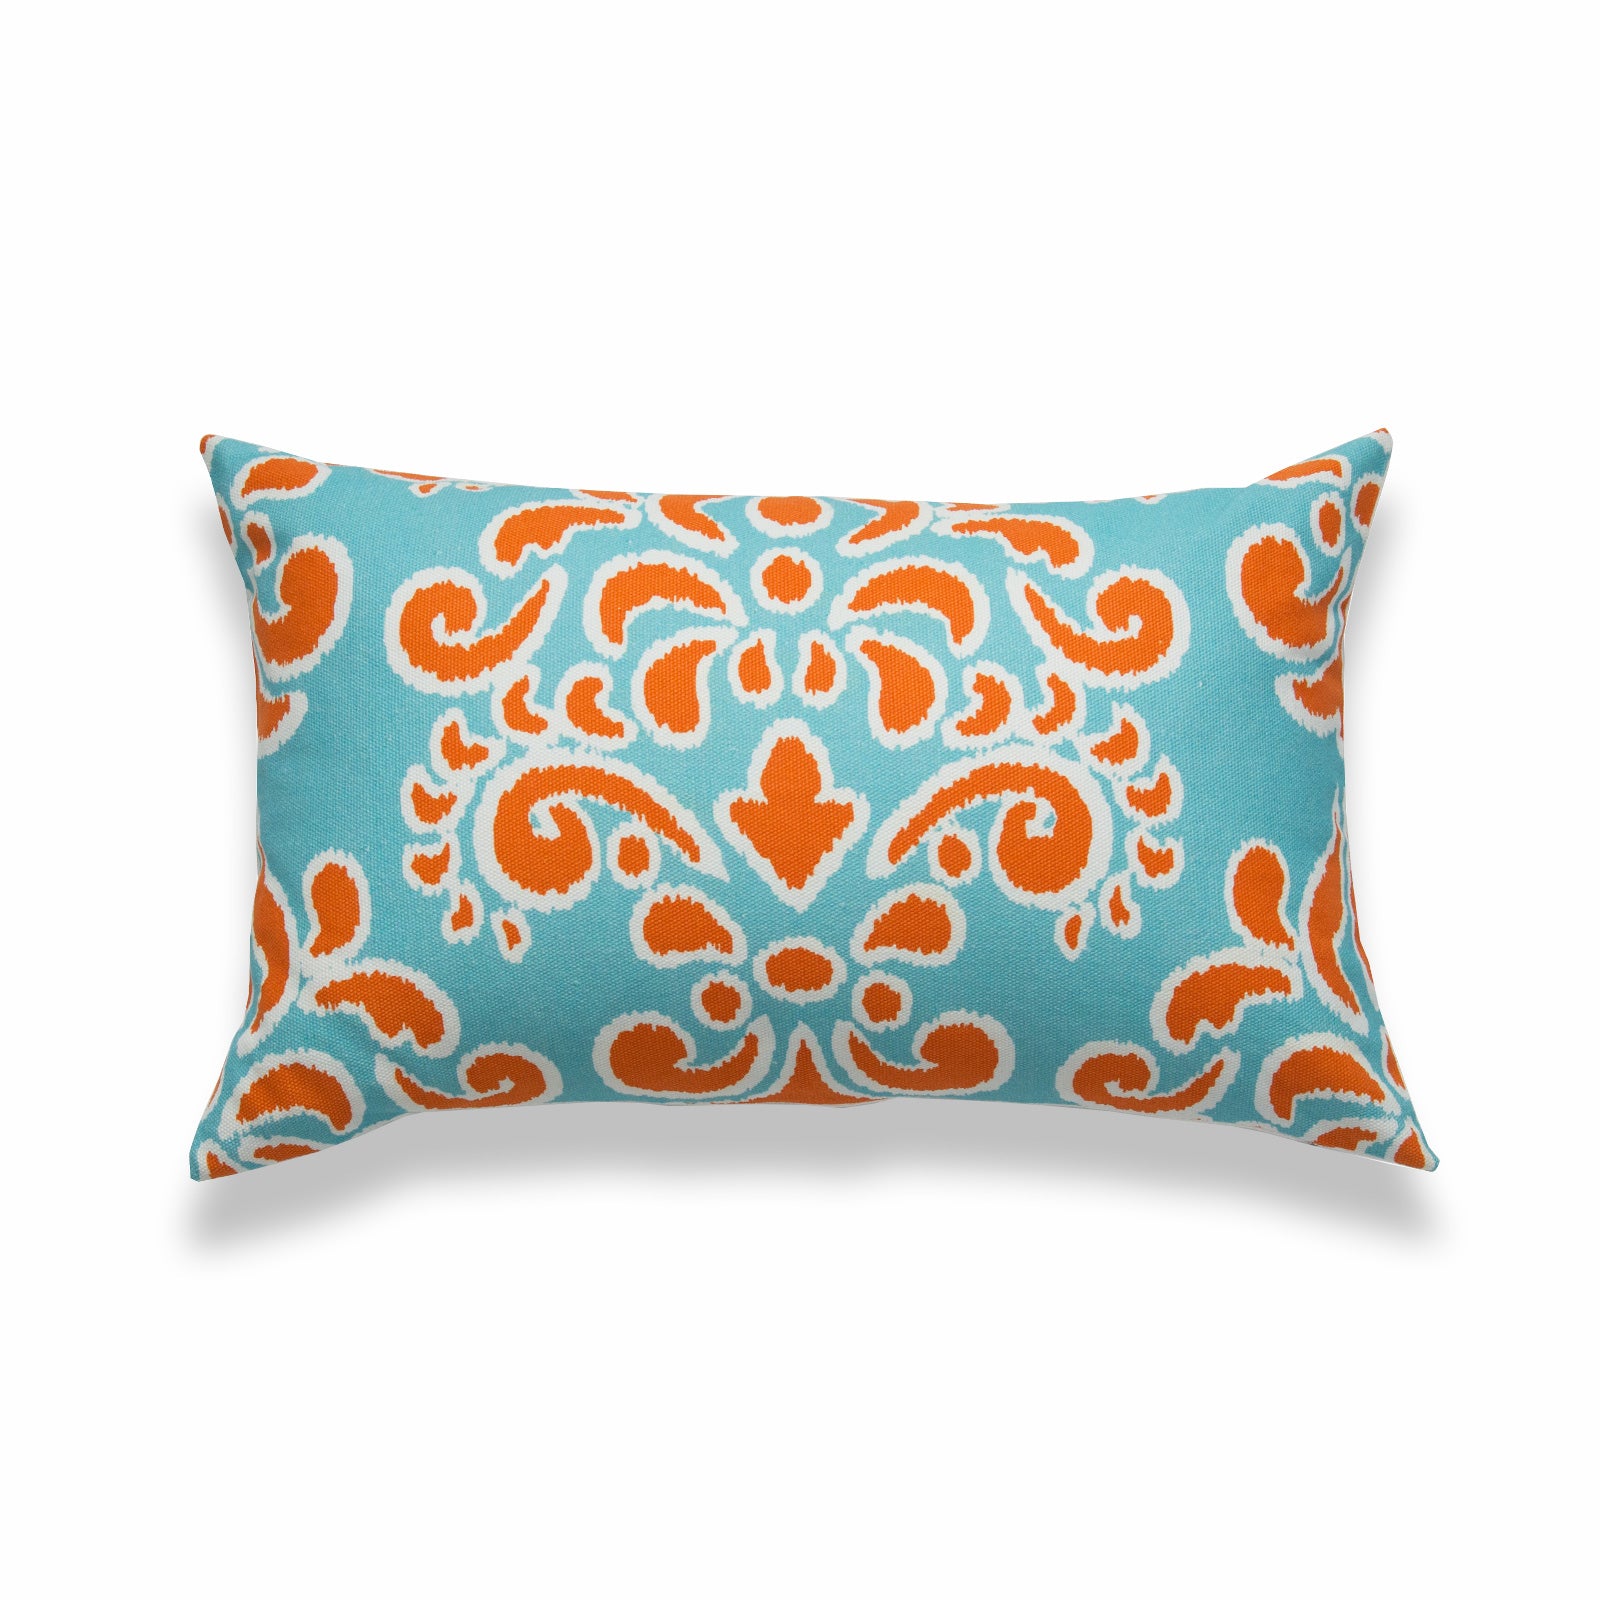 Ikat Inspired Lumbar Pillow Cover, Damask, Orange Aqua, 12"x20"